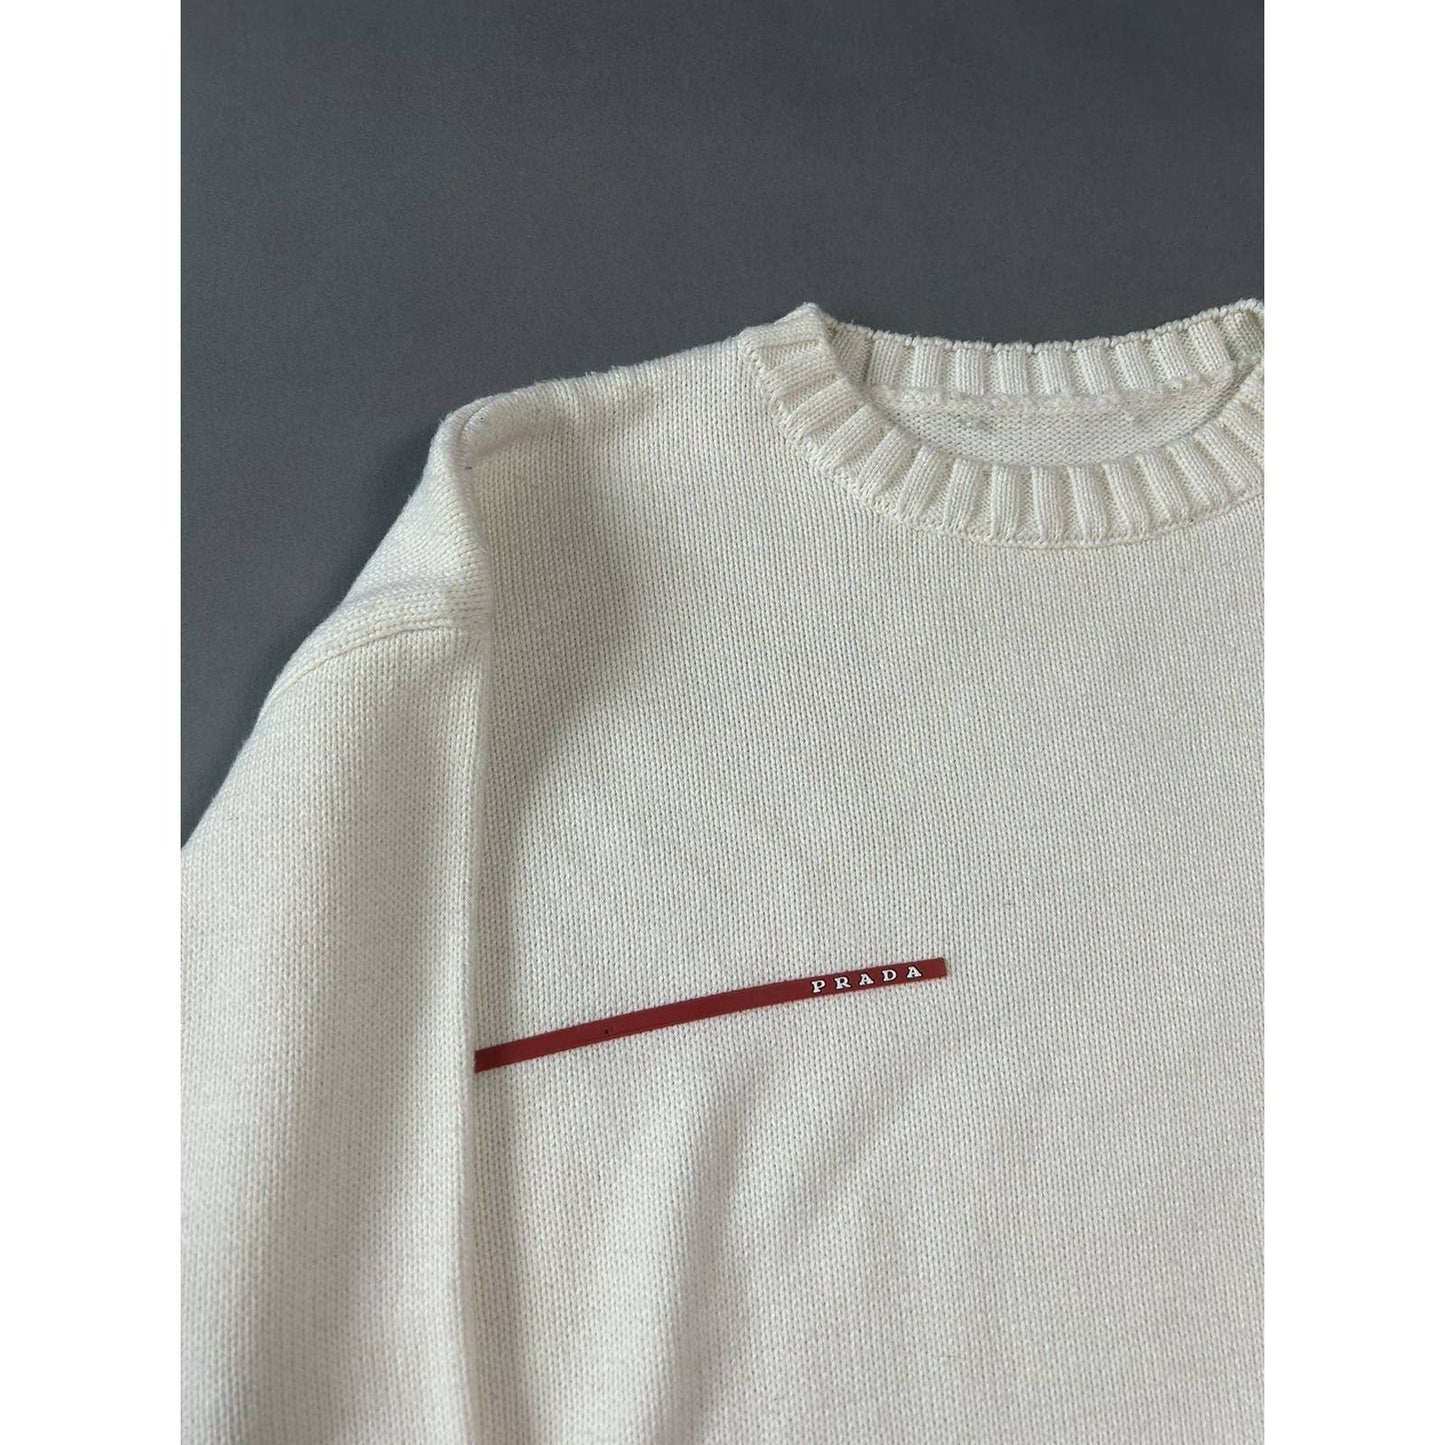 Prada sweater white big logo red tab vintage